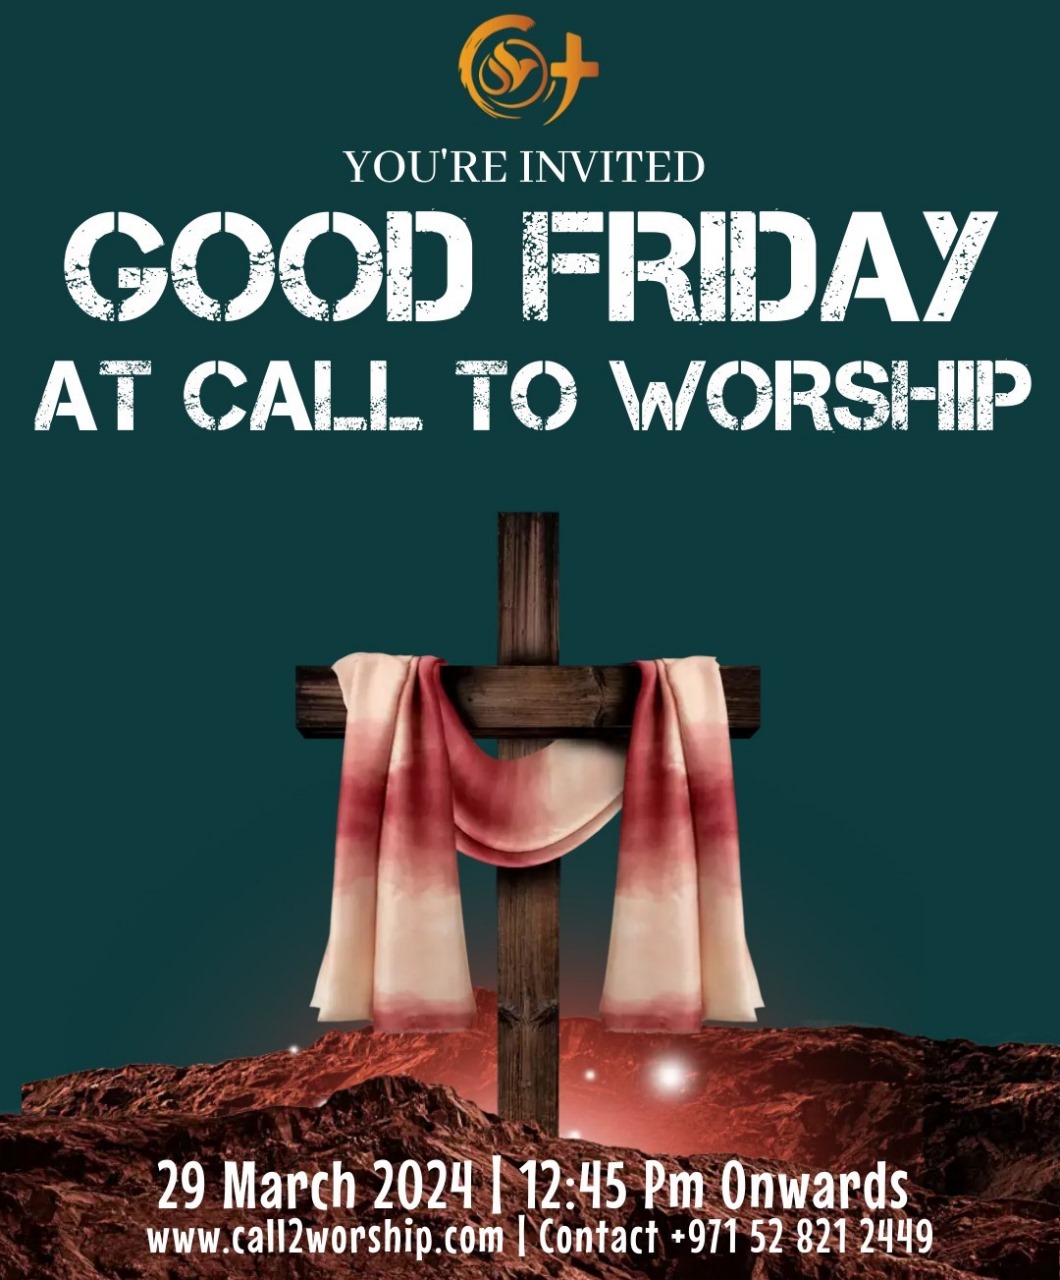 Call to worship good friday at call to worship